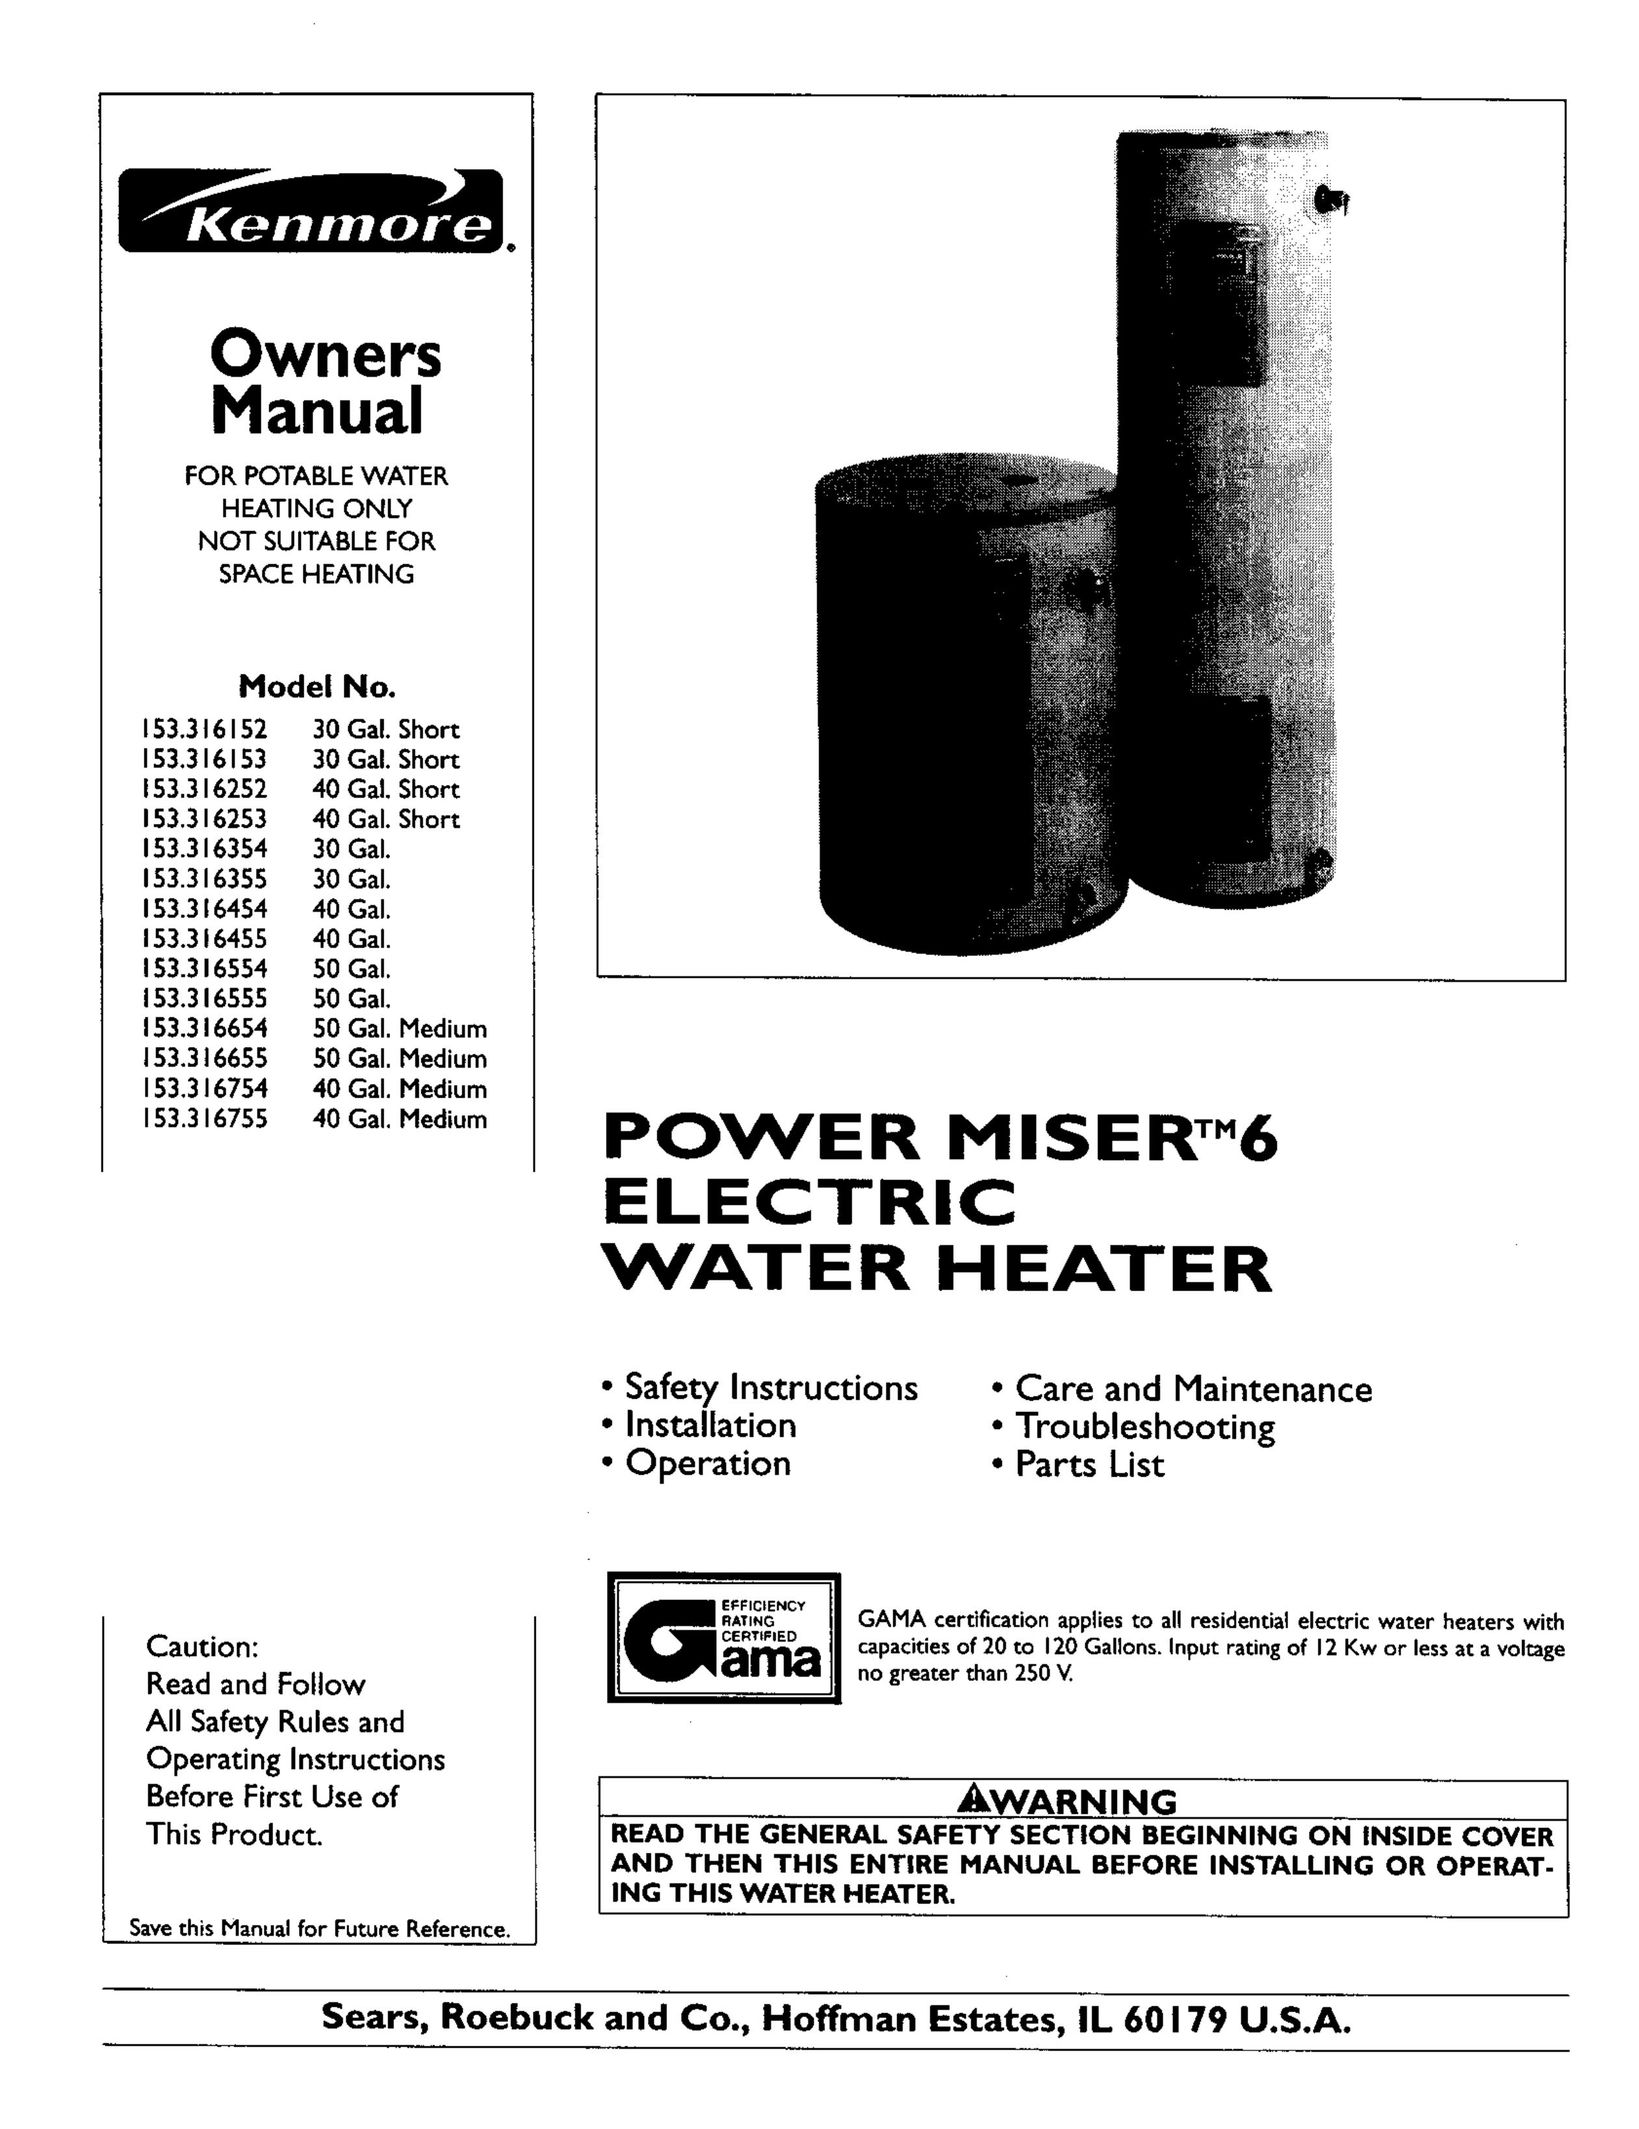 Kenmore 153.316354 Water Heater User Manual